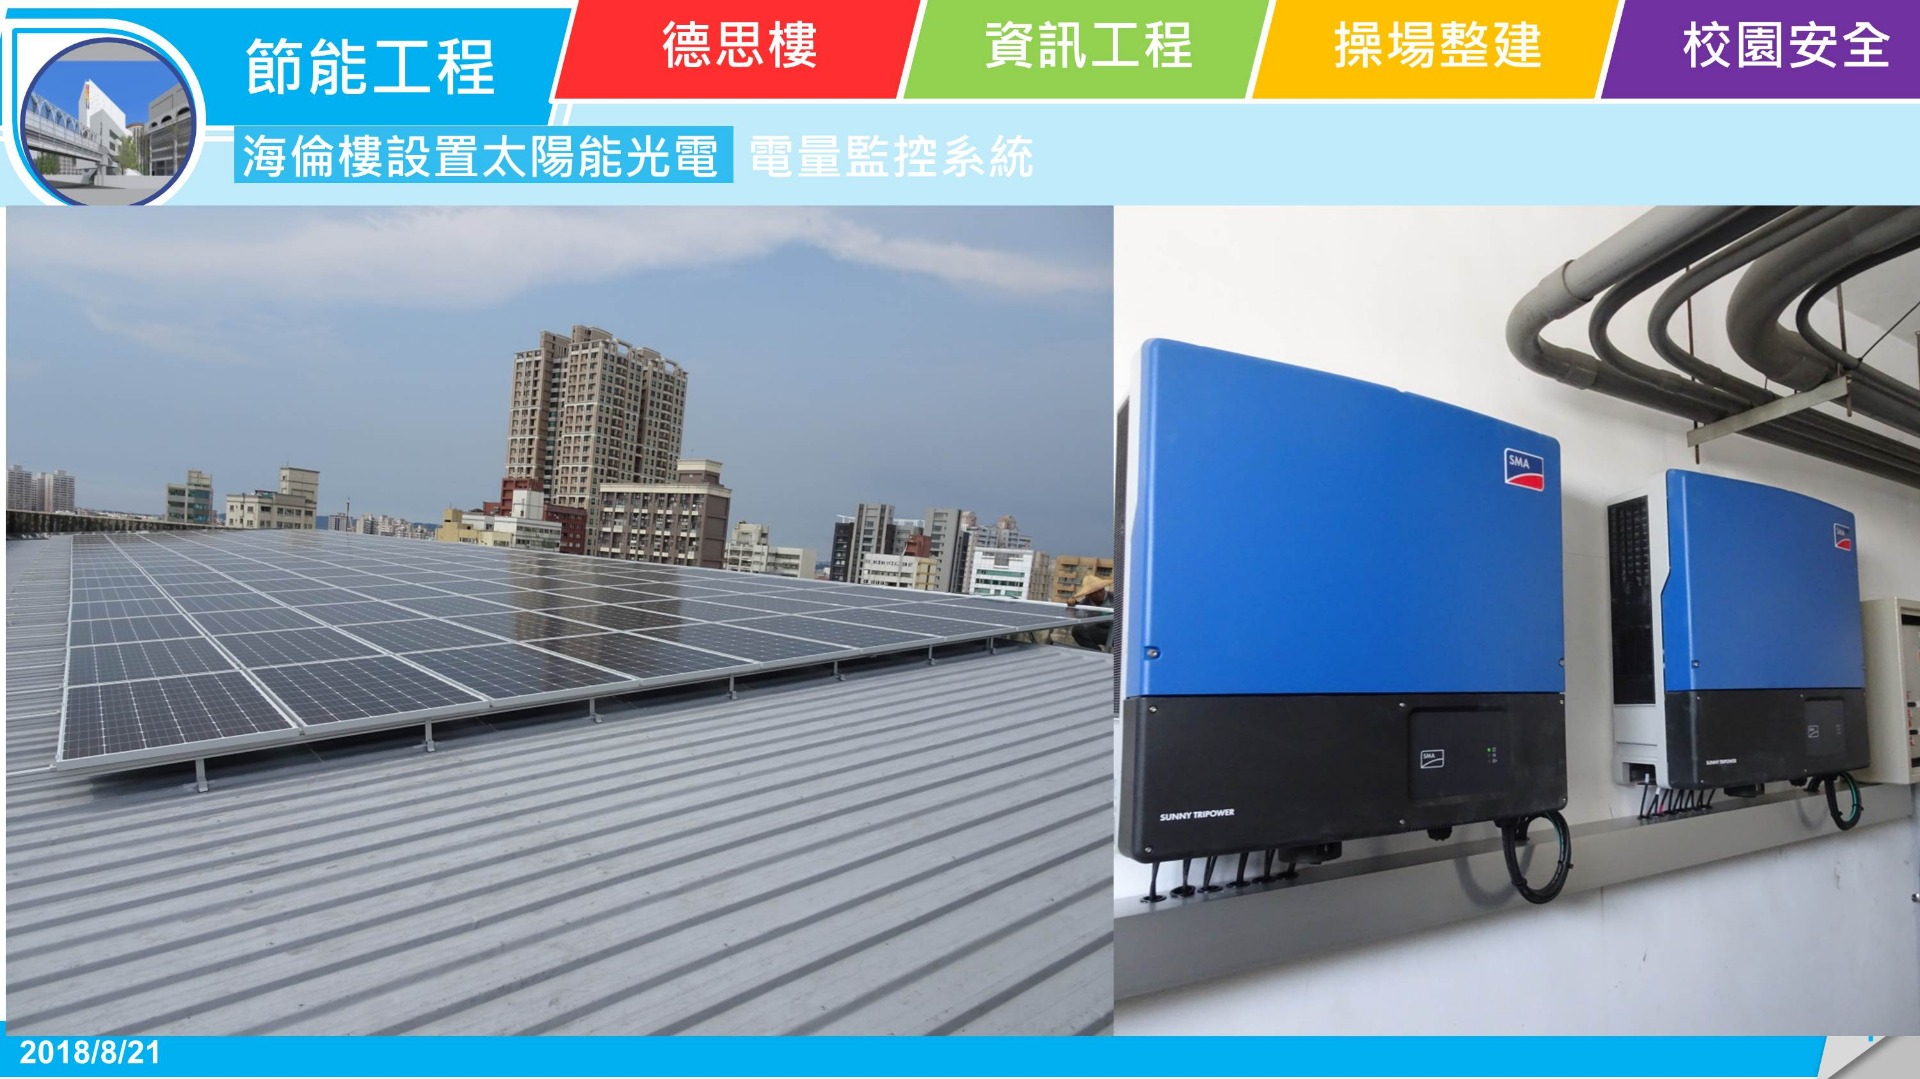 海倫樓設置太陽能光電及電量監控系統